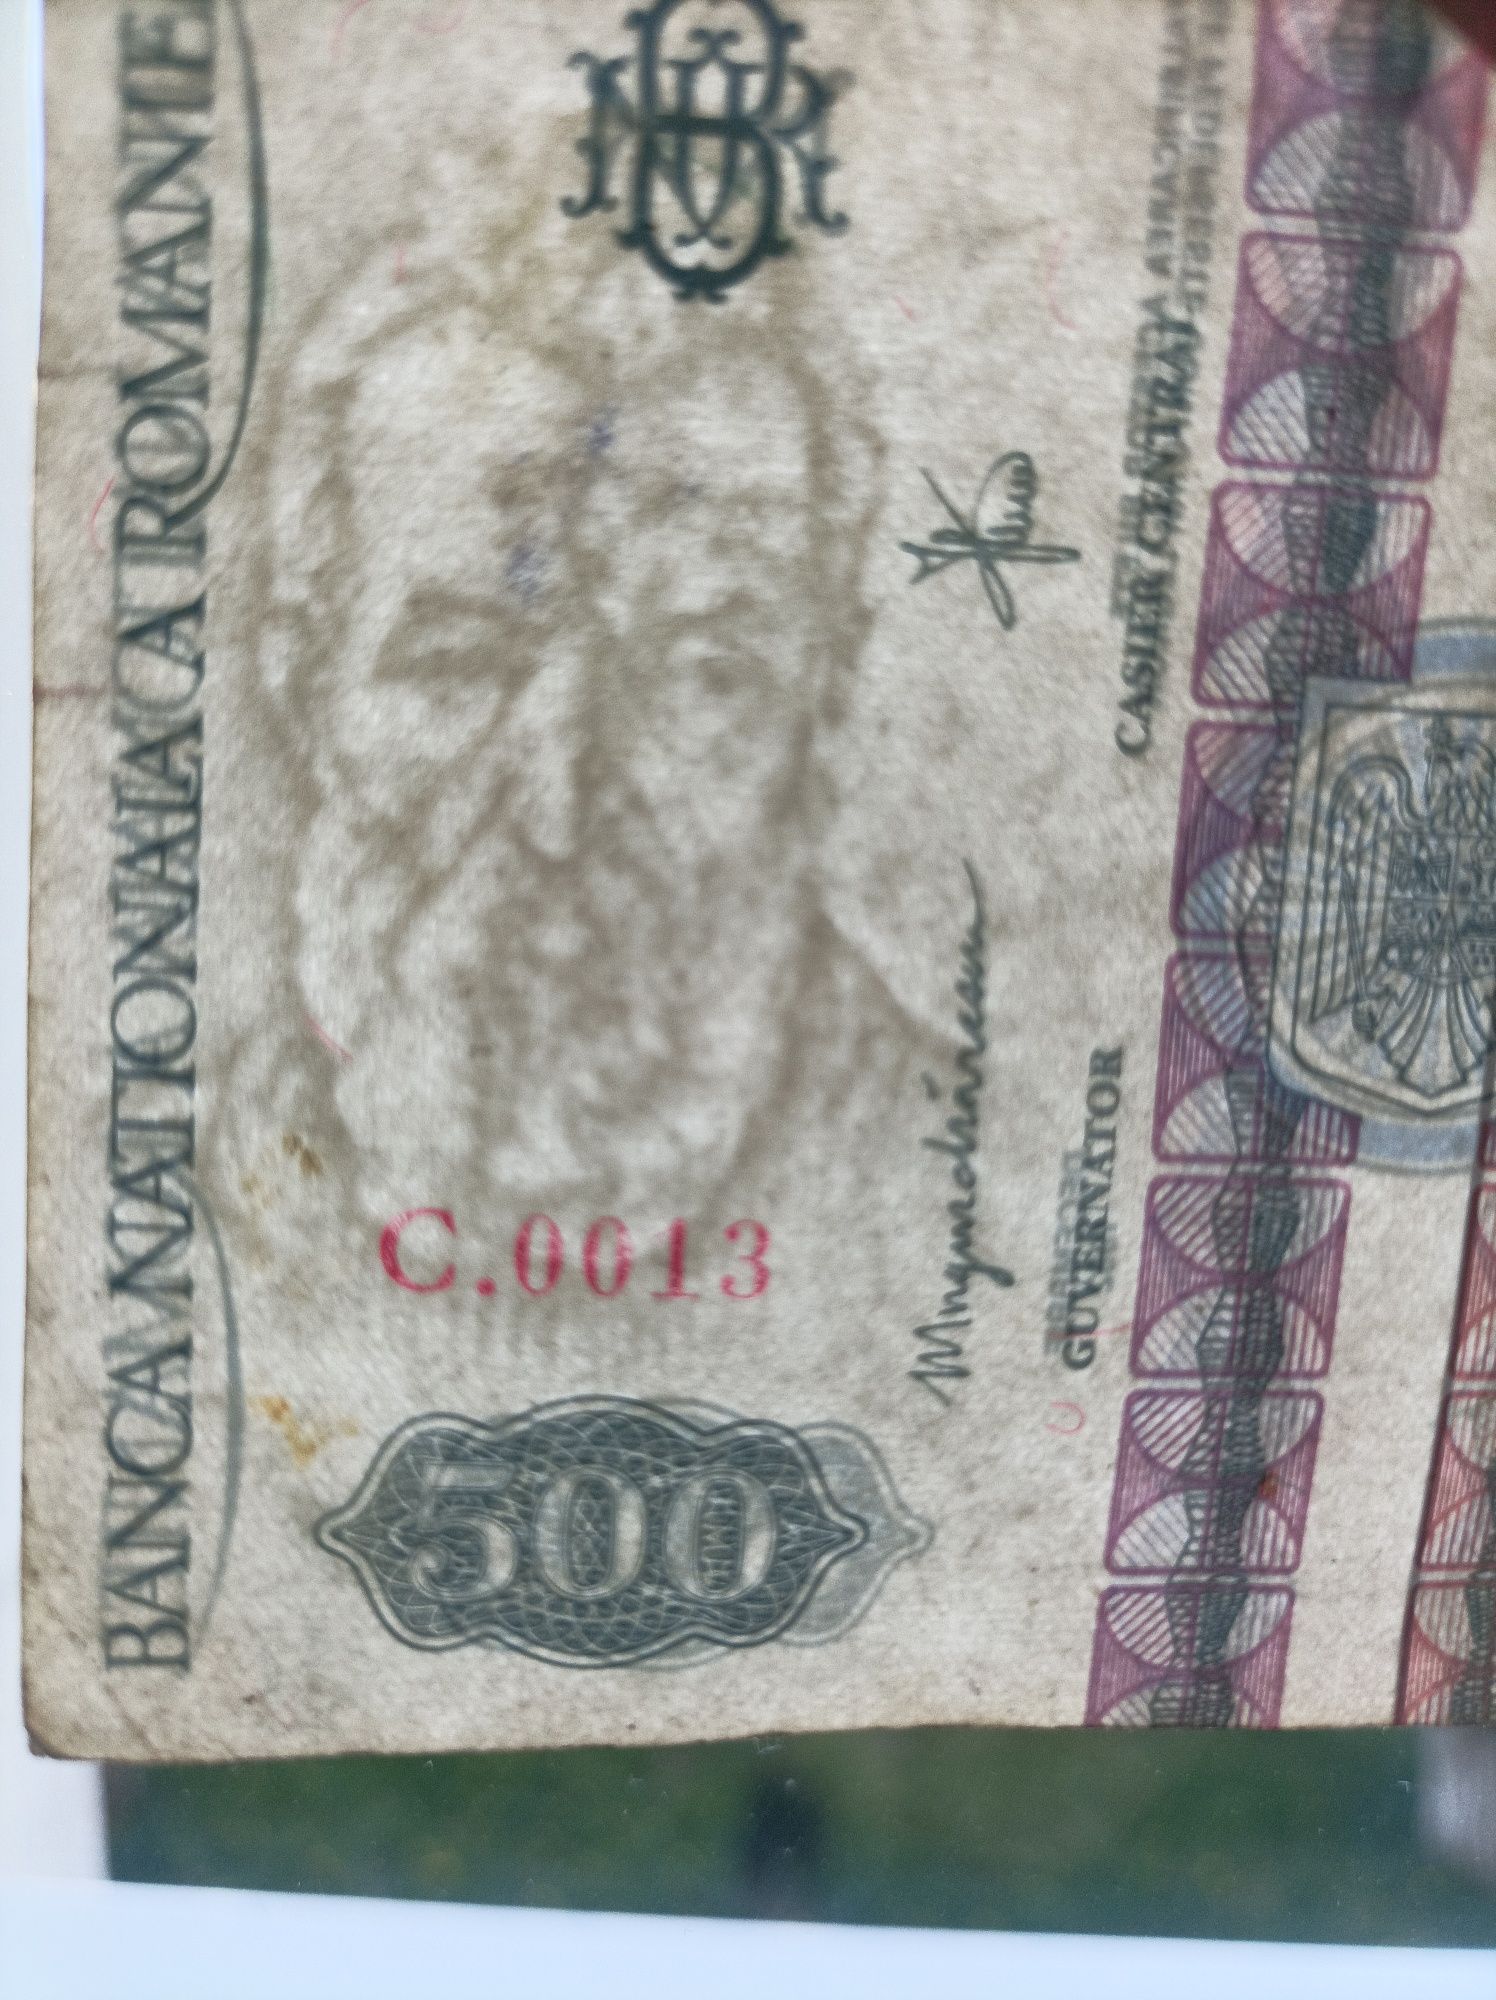 Bancnota 500 lei dec 1992 seria C.